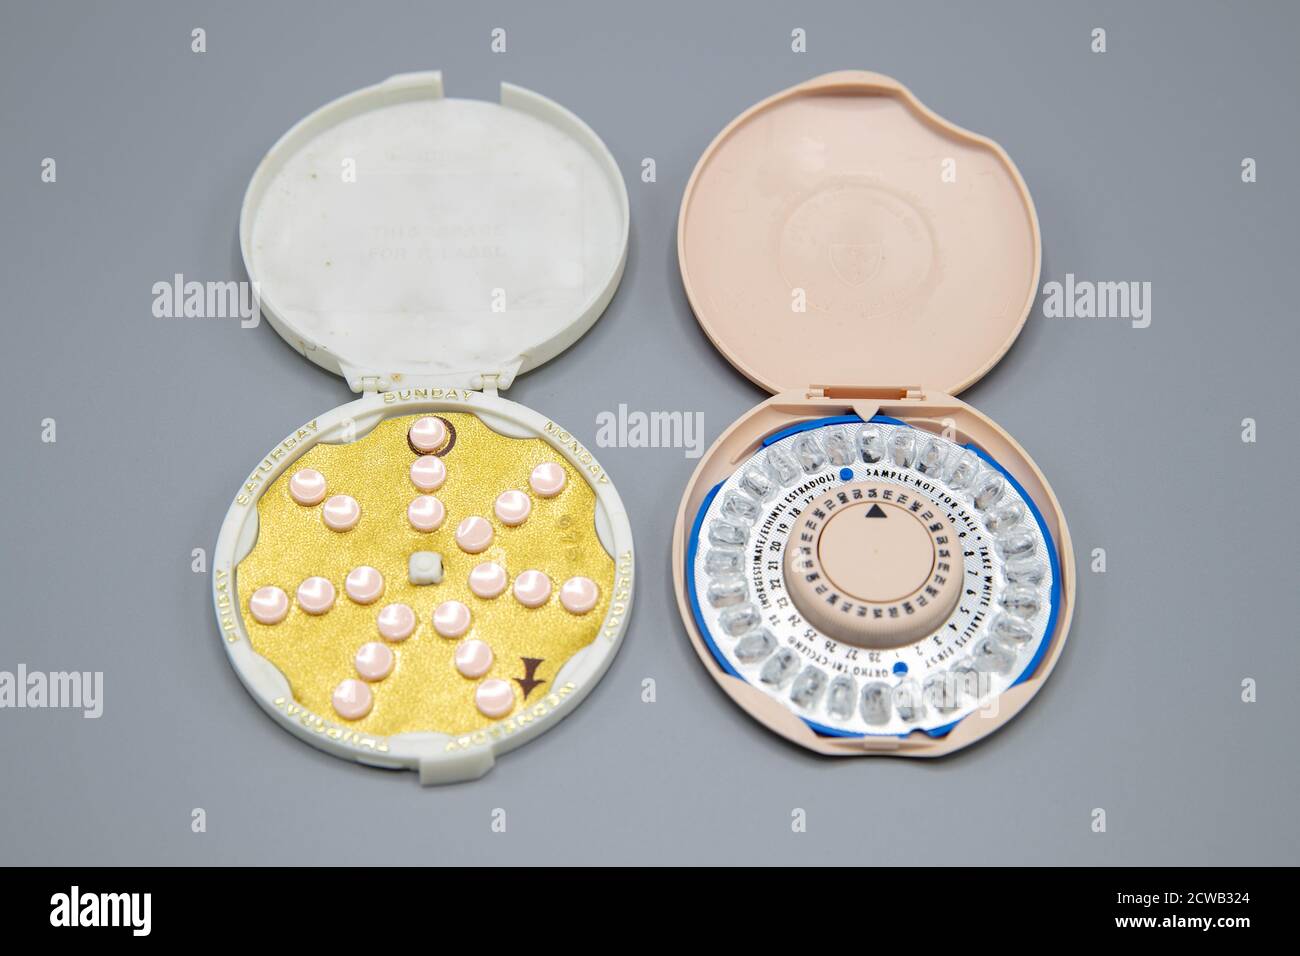 Pilules contraceptives l’approbation par la FDA du premier contraceptif oral, Enovid, en 1960, a marqué une révolution dans la santé reproductive des femmes. Avec elle, les femmes ont gagné un certain contrôle de la planification familiale, ainsi que la protection contre les grossesses et l'accouchement dangereux, et la thérapie pour les irrégularités menstruelles et l'infertilité. En 1970, la réglementation de la FDA sur les contraceptifs oraux a pris une autre mesure importante lorsqu'elle a commencé à exiger qu'ils comprennent un encart d'emballage pour informer les patients des risques pour la santé associés au médicament, une des premières fois que l'agence a demandé l'inclusion d'informationnel l Banque D'Images